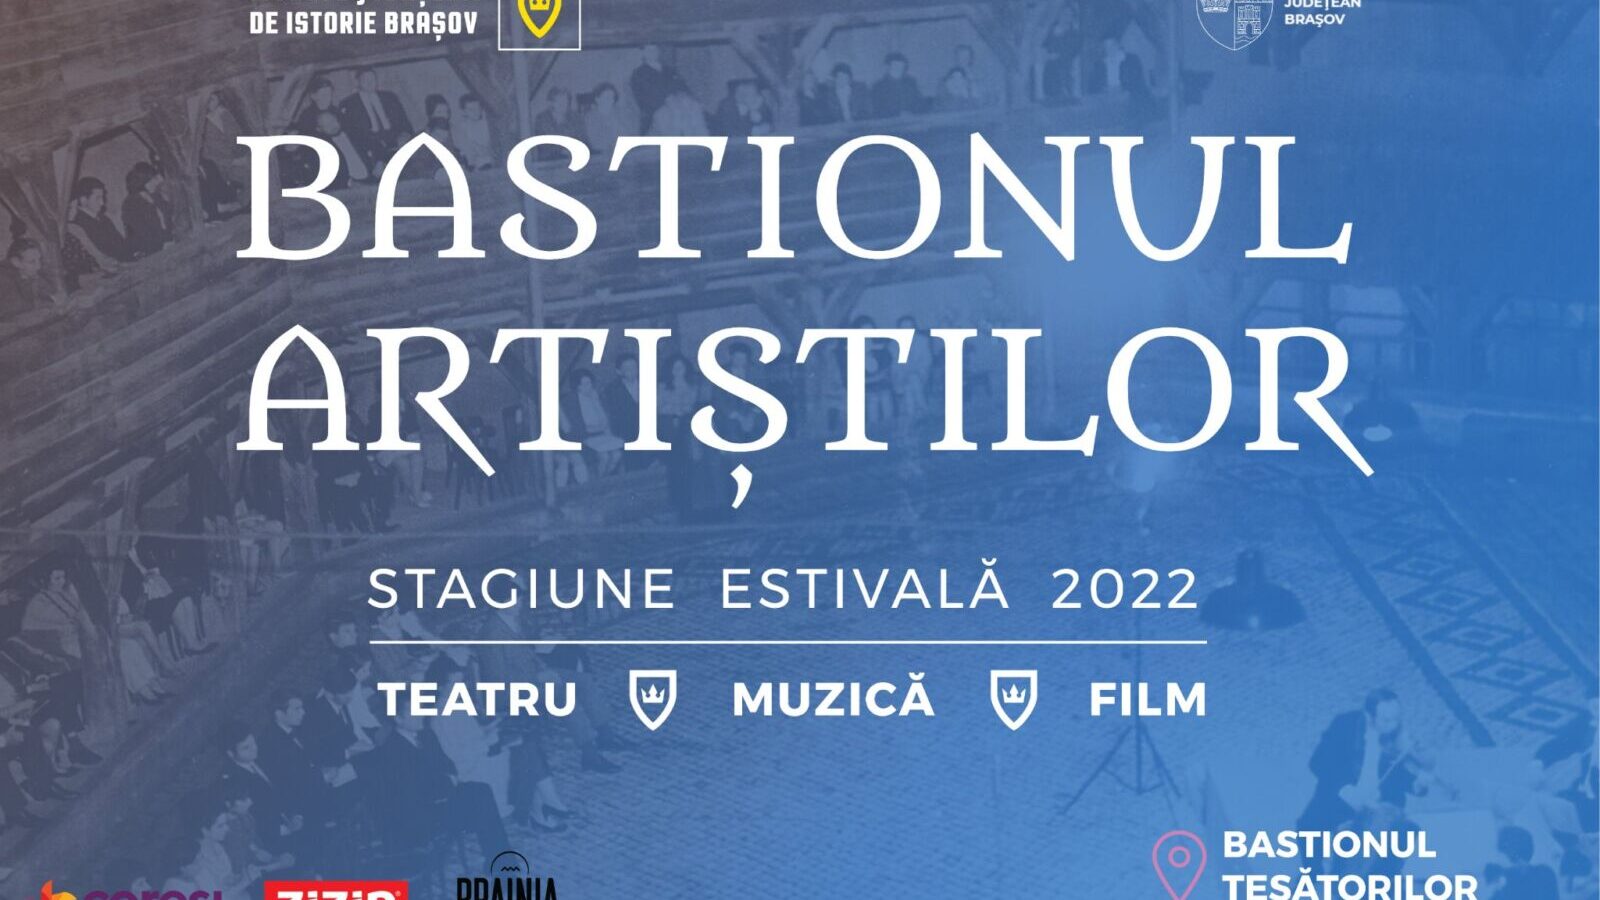 Bastionul Artiștilor 2022